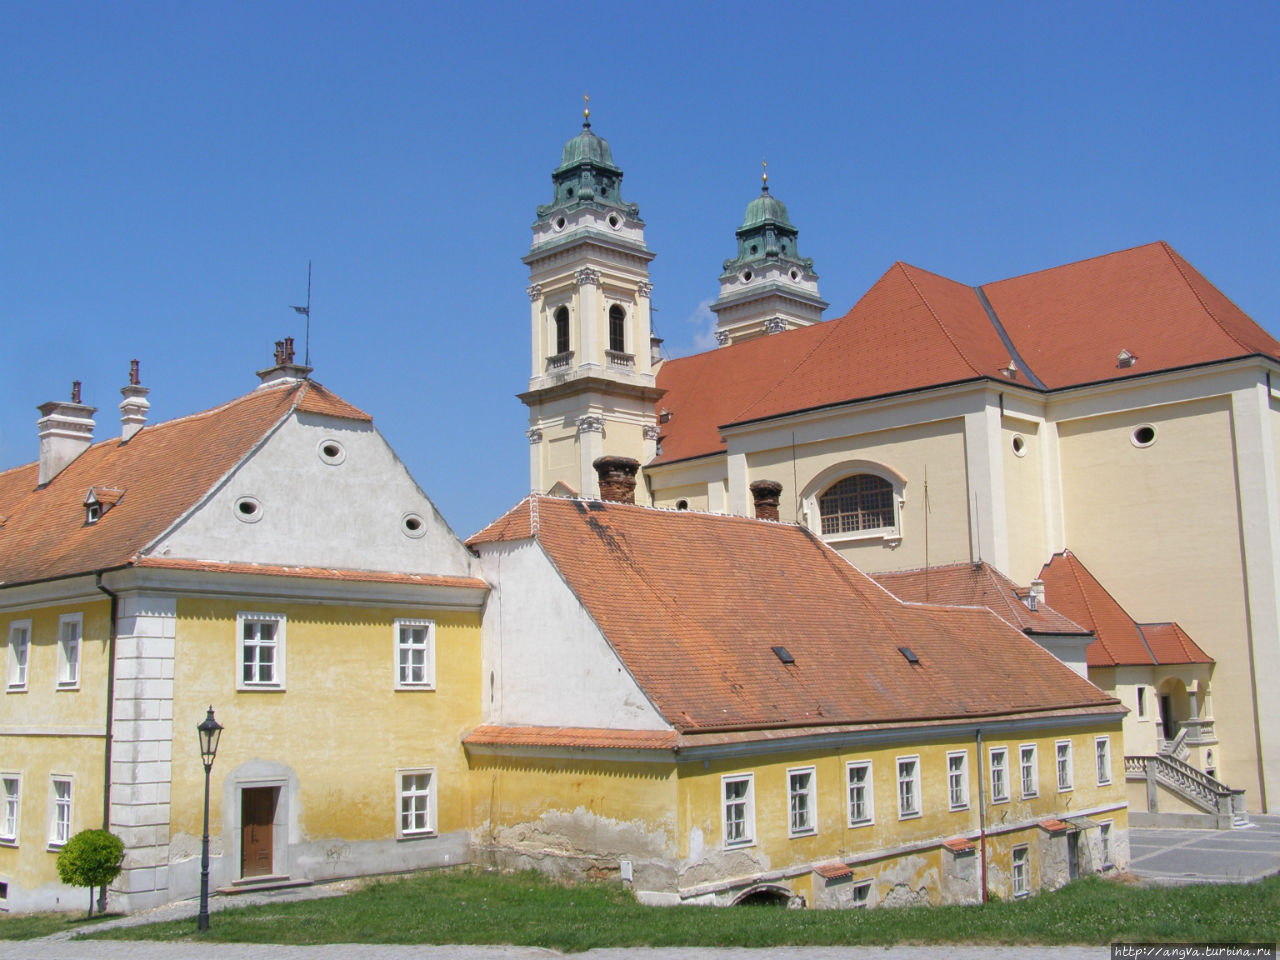 Леднице — наследие князей Лихтенштейн Леднице, Чехия